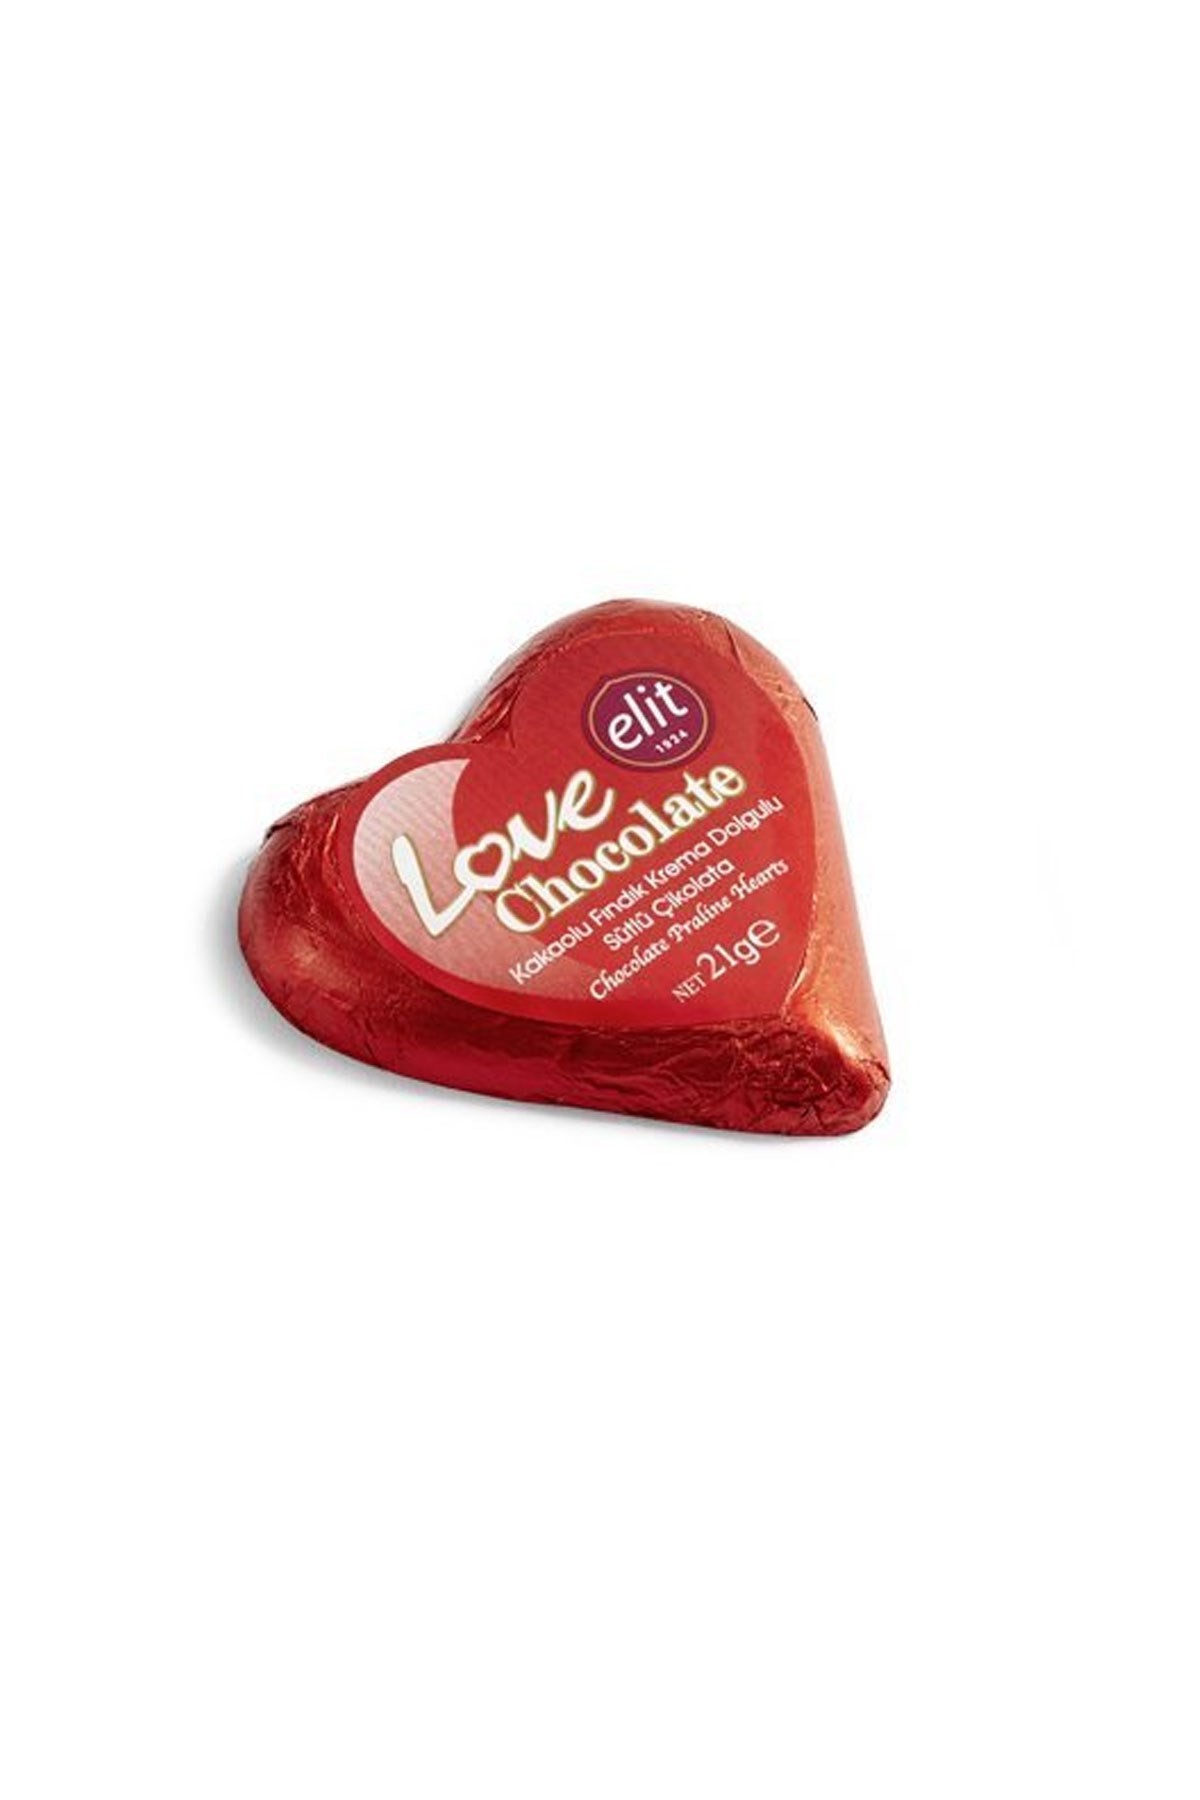 Elit Love Chocolate Sütlü Kalp Çikolata Glütensiz 21 g